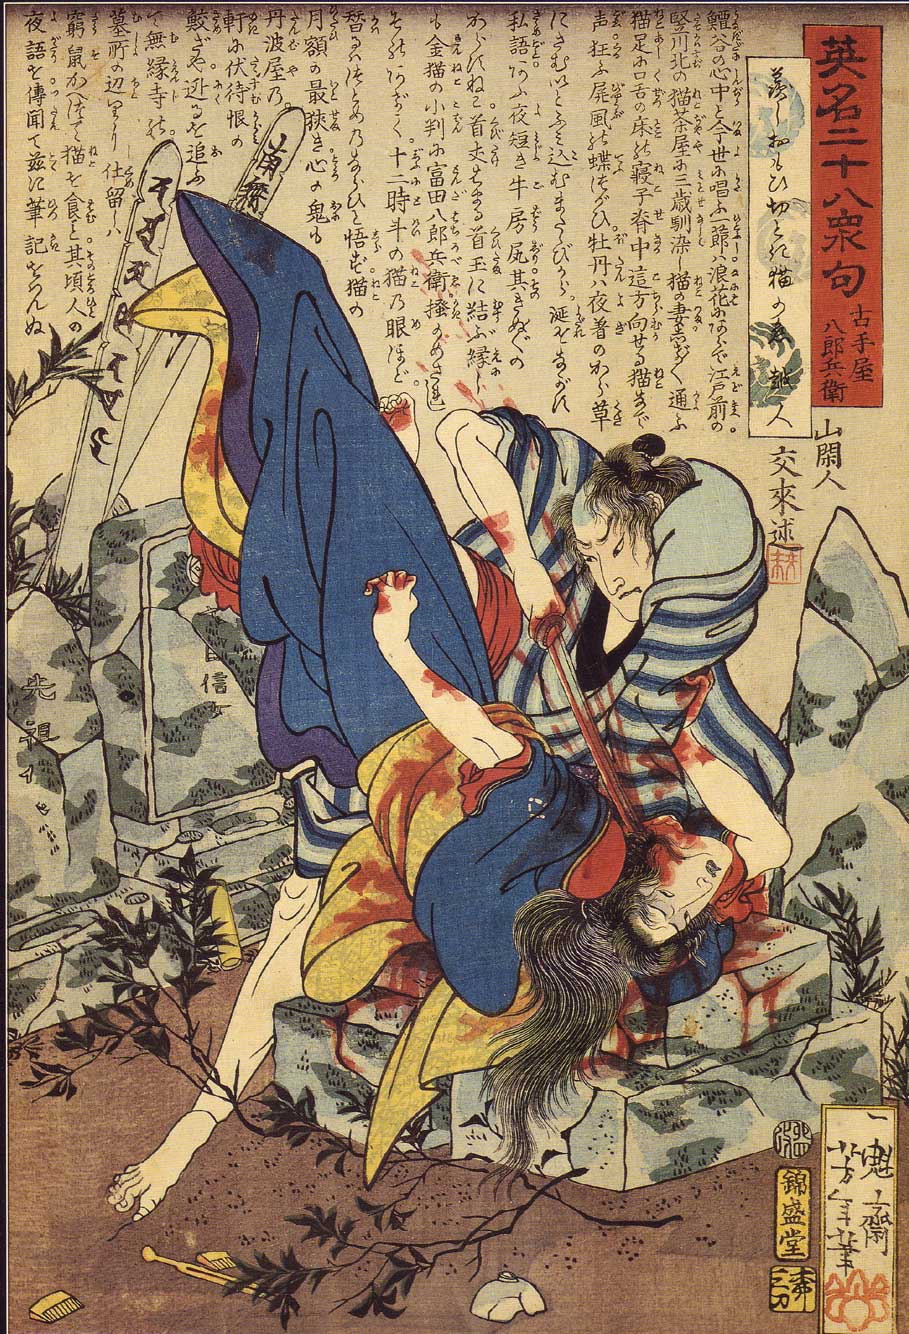 Yoshitoshi - Furuteya Hachirōbei murdering a woman in a graveyard - Twenty-Eight Famous Murders with Verse